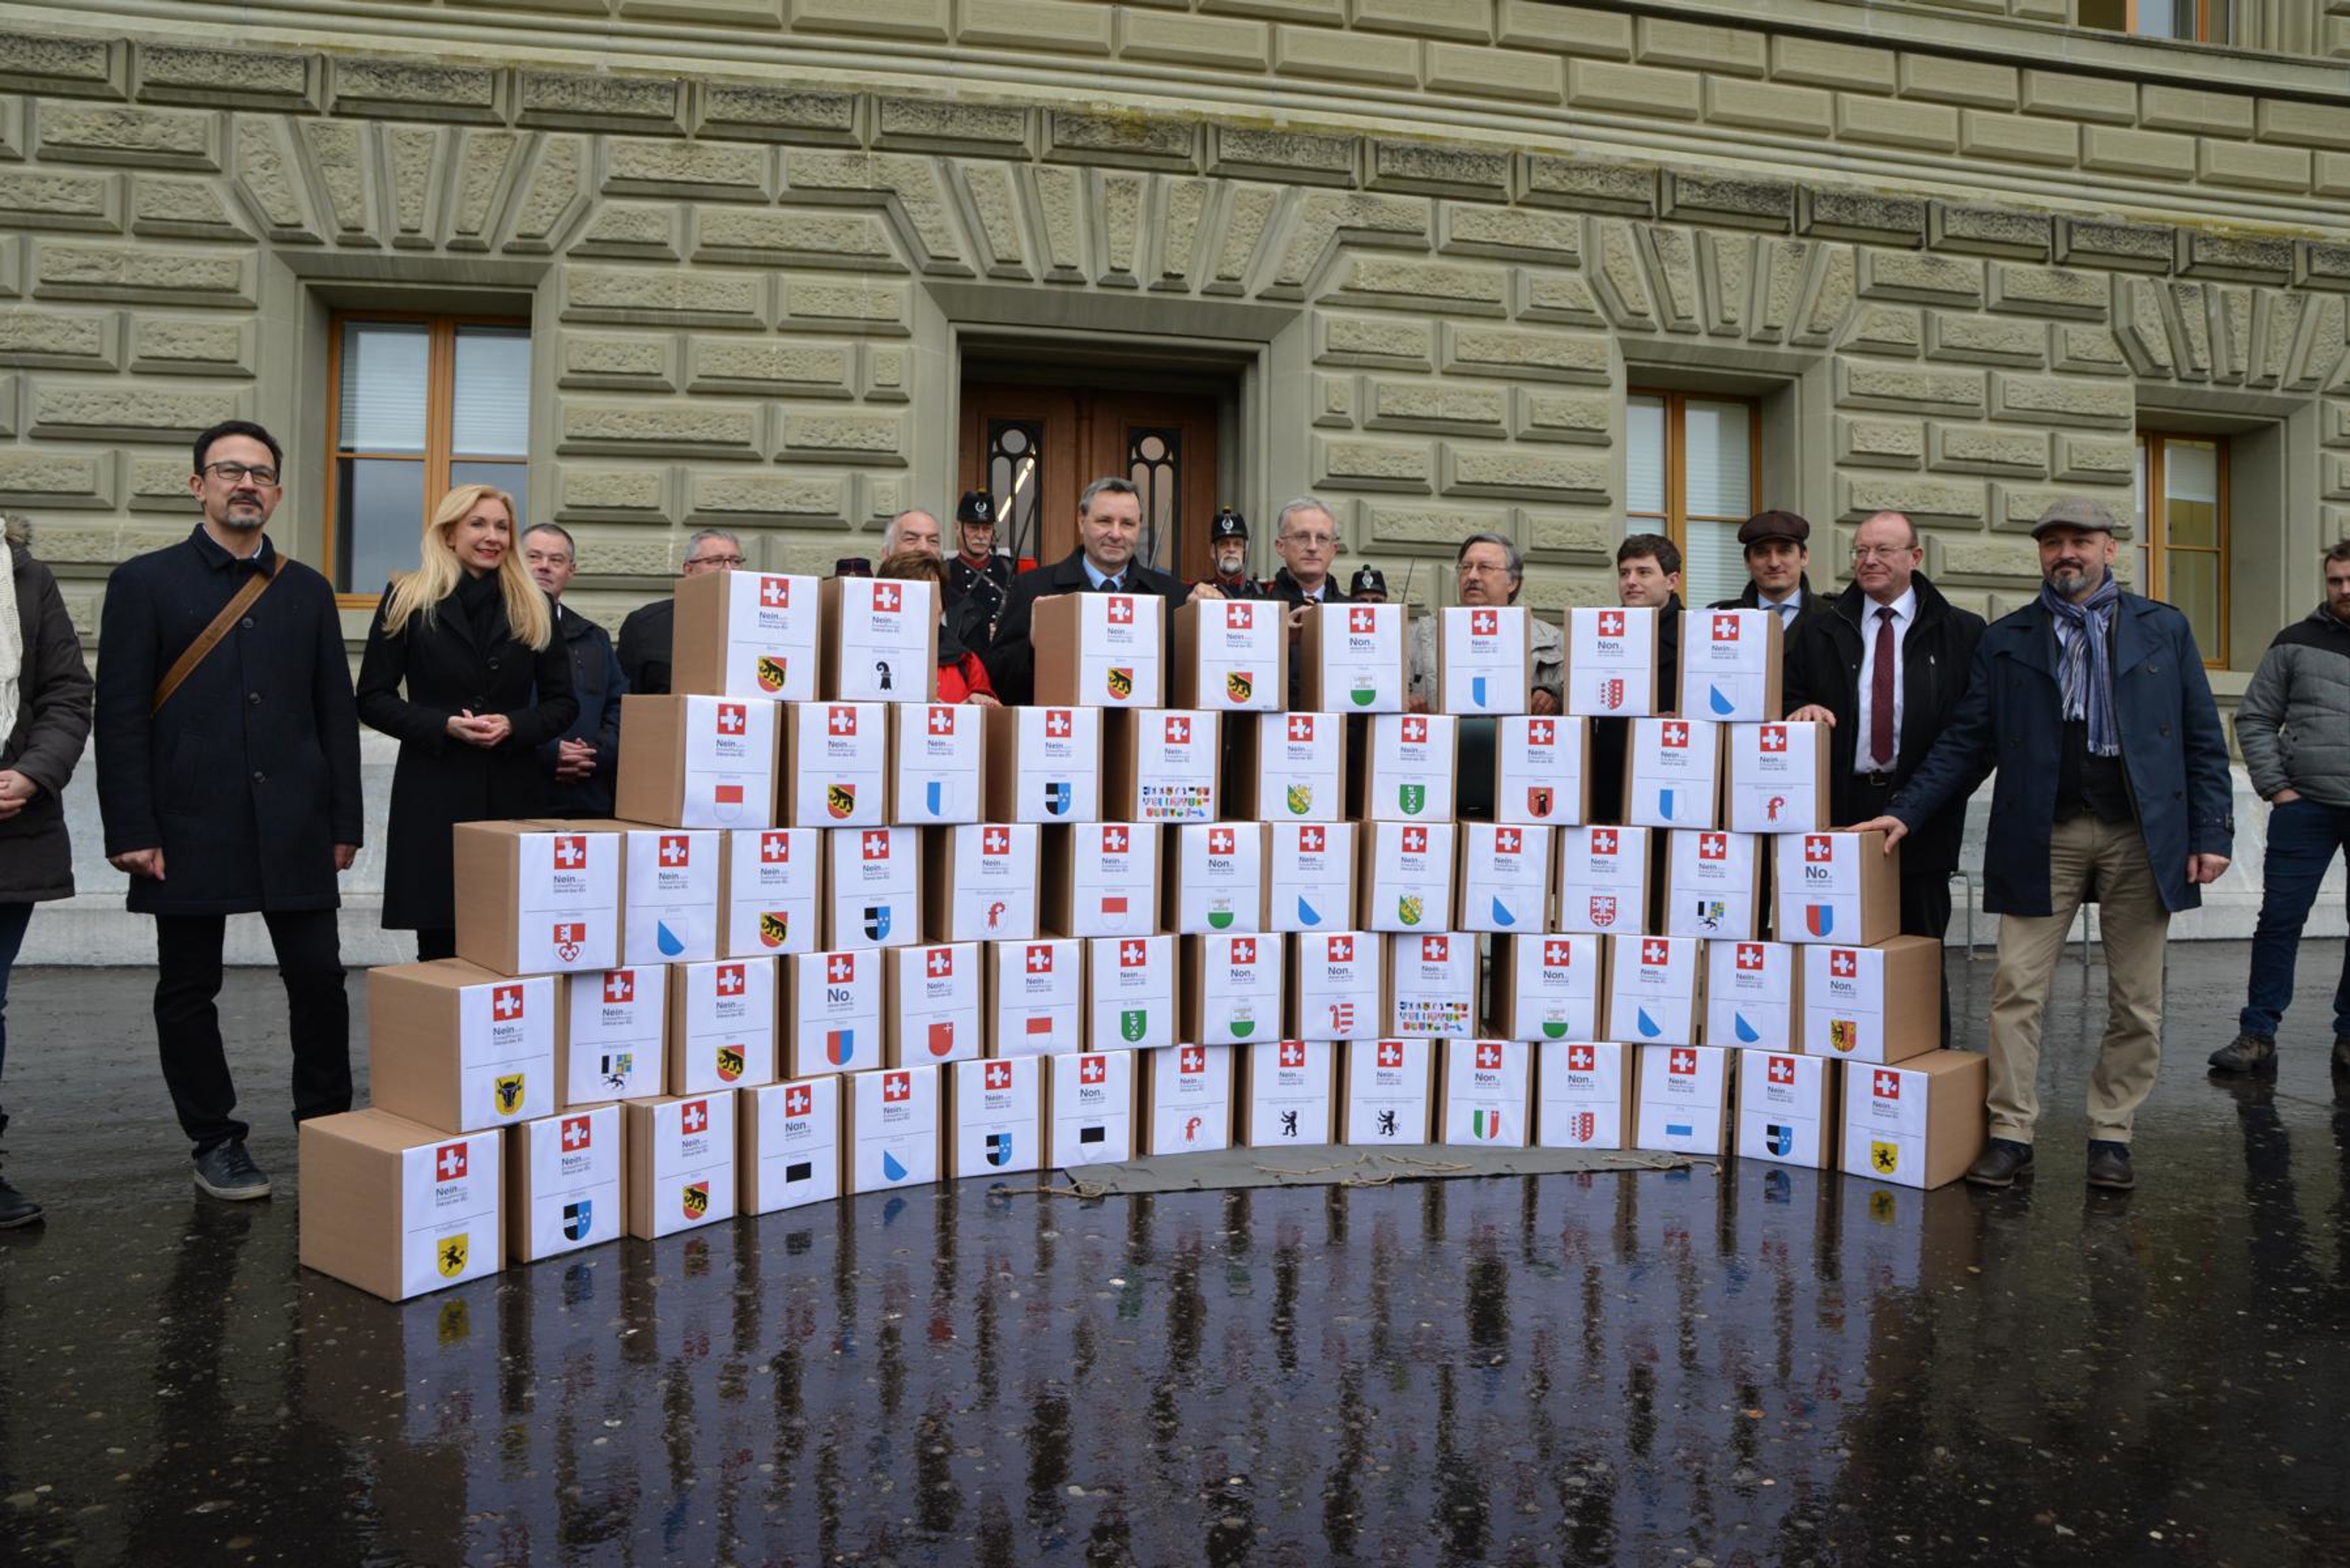 Am 17. Januar hat die Interessengemeinschaft Schiessen Schweiz der Bundeskanzlei über 125'000 Unterschriften für das Referendum gegen das Waffengesetz und die Übernahme der EU-Waffenrichtlinie überreicht.